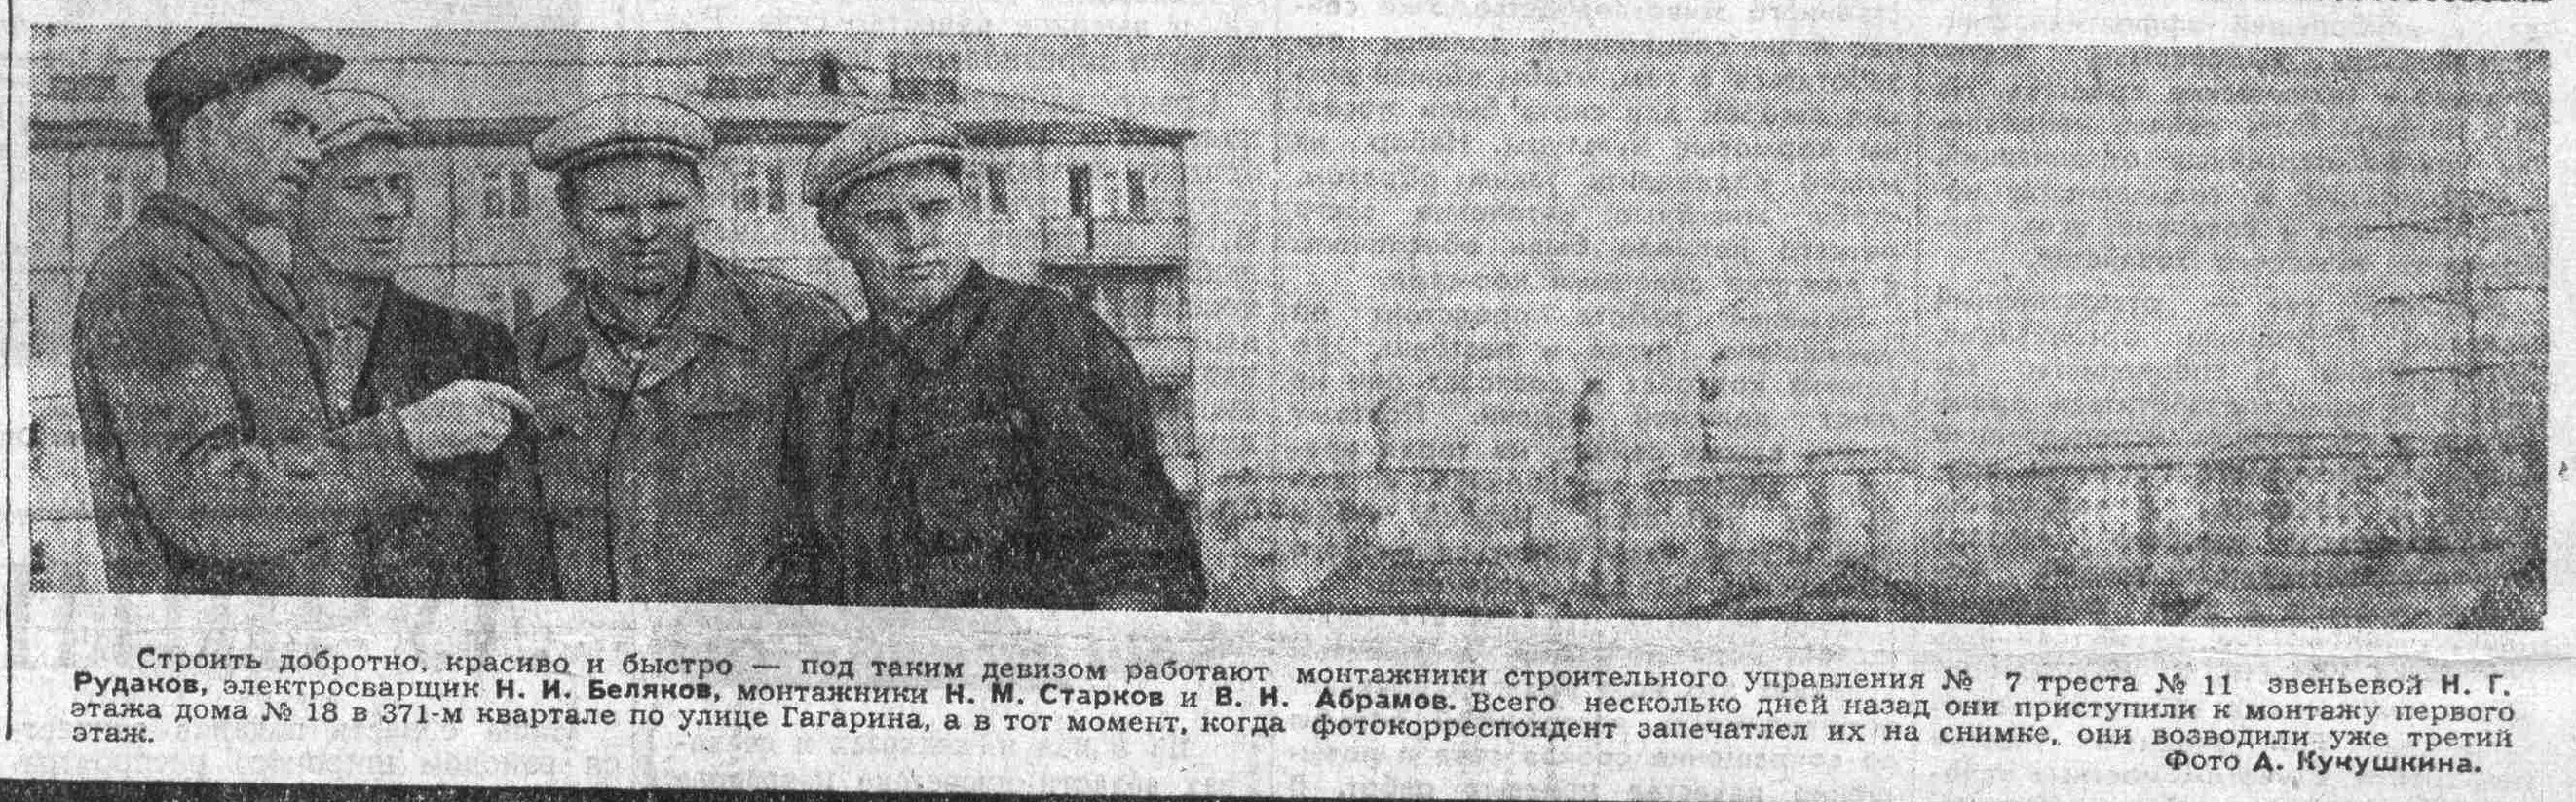 Мяги-ФОТО-11-ВКа-1965-05-06-фото из кв. 371